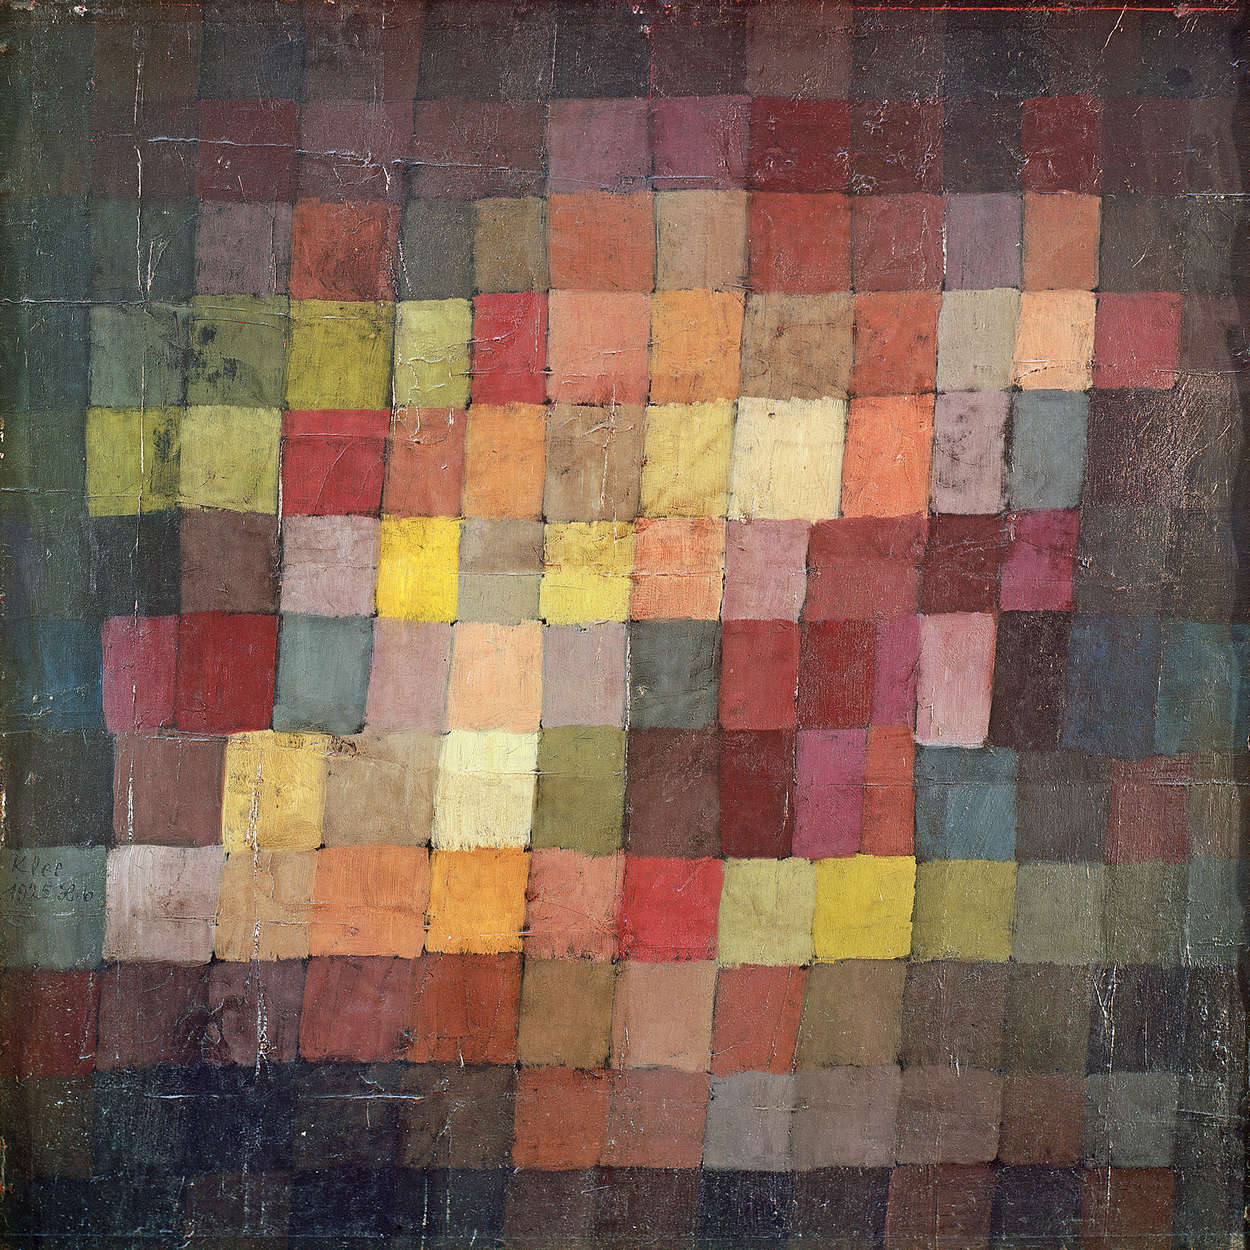             Papier peint panoramique "Vieille harmonie" de Paul Klee
        